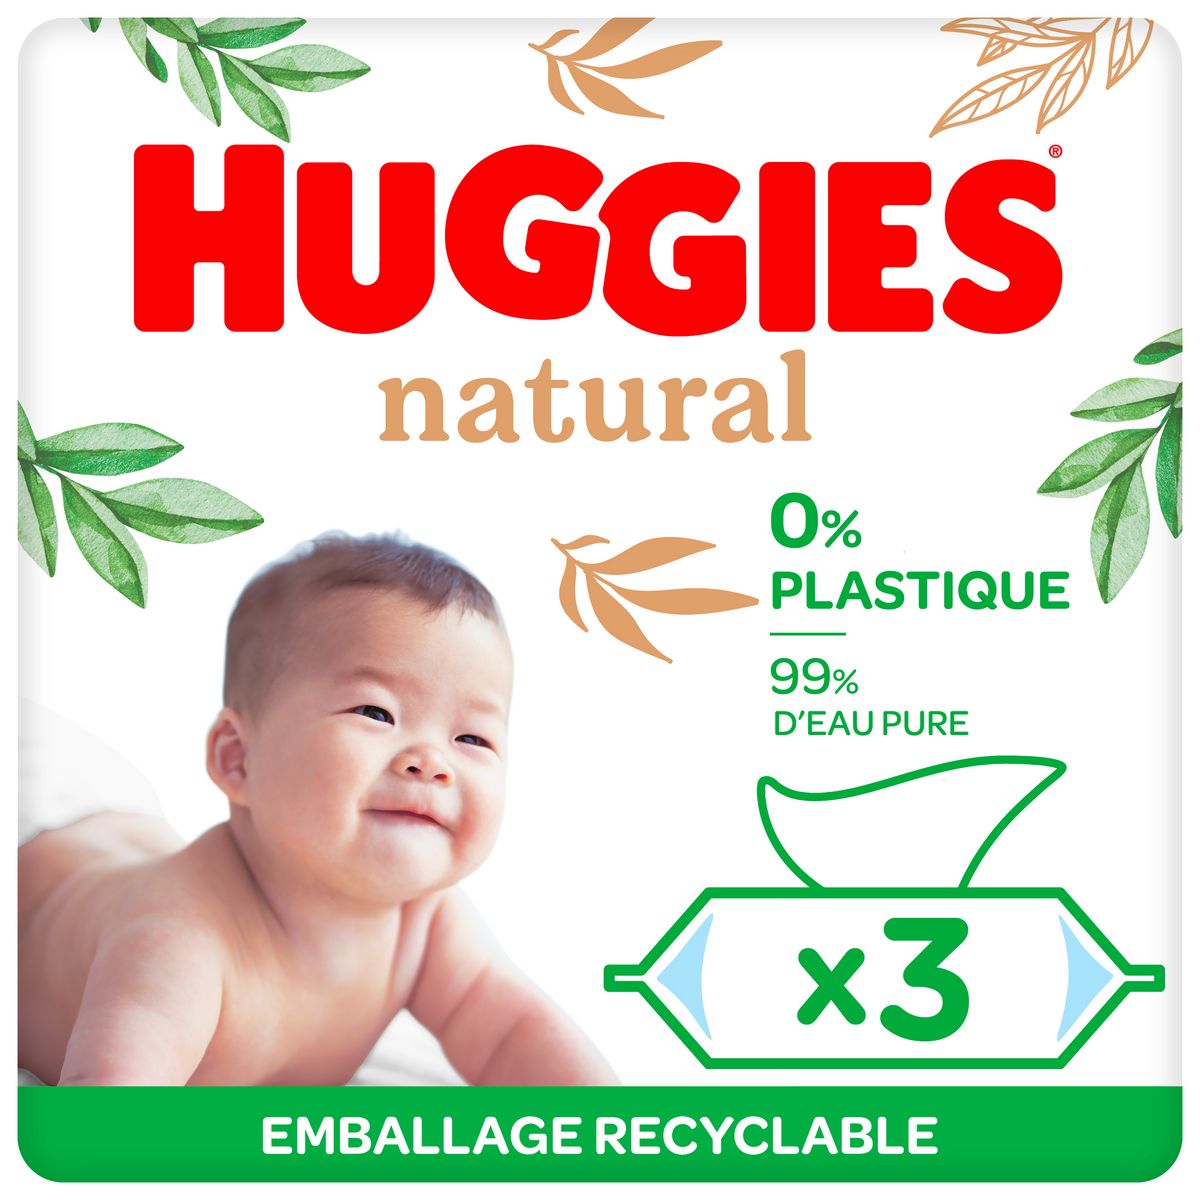 POUCE Lingettes nettoyantes pour bébé 70 lingettes pas cher 